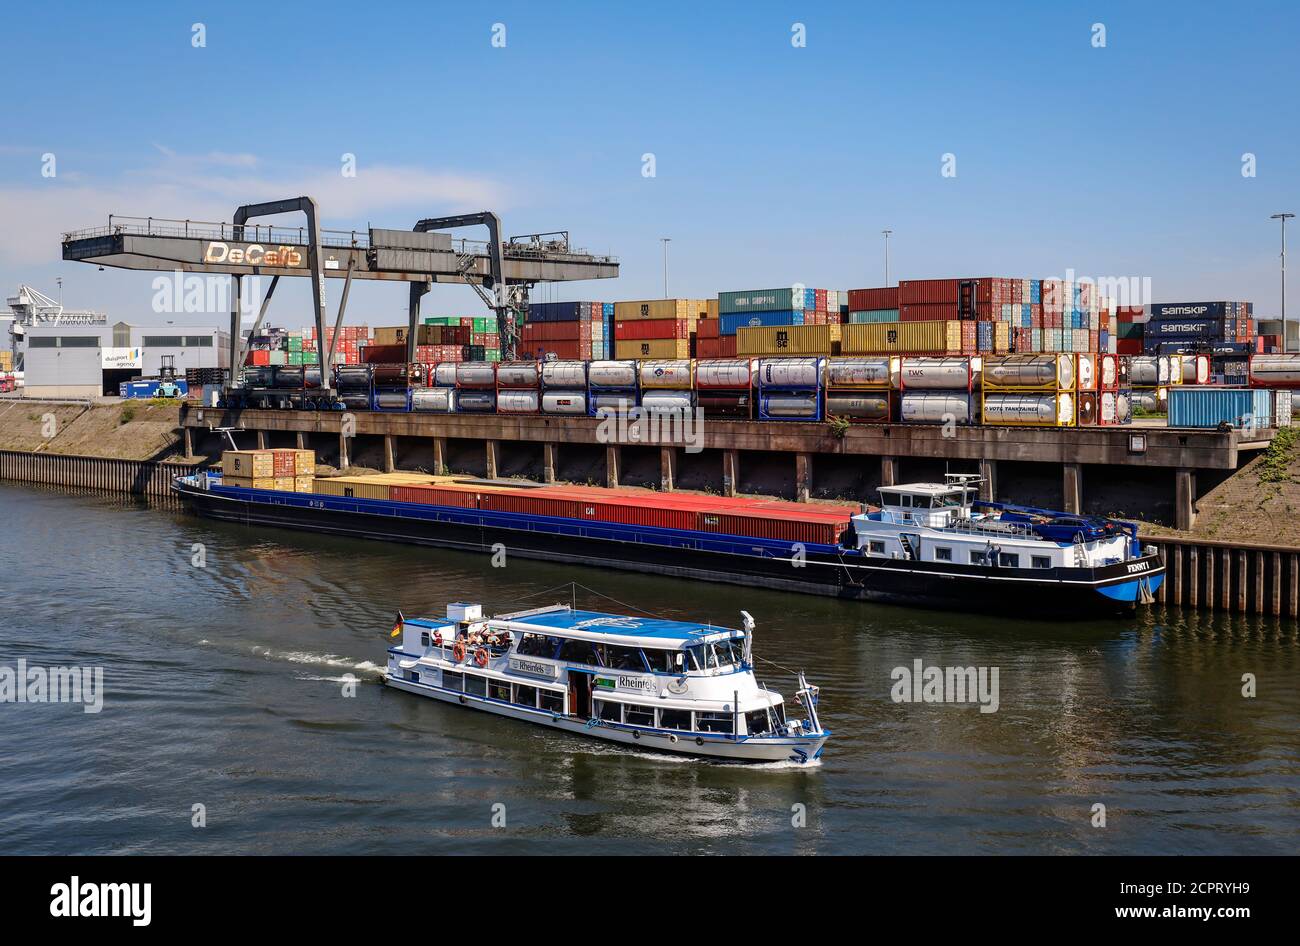 Duisburg, région de la Ruhr, Rhénanie-du-Nord-Westphalie, Allemagne - Port de Duisburg, les navires de cargaison sont chargés de conteneurs, terminal à conteneurs DUSS-terminal in Banque D'Images